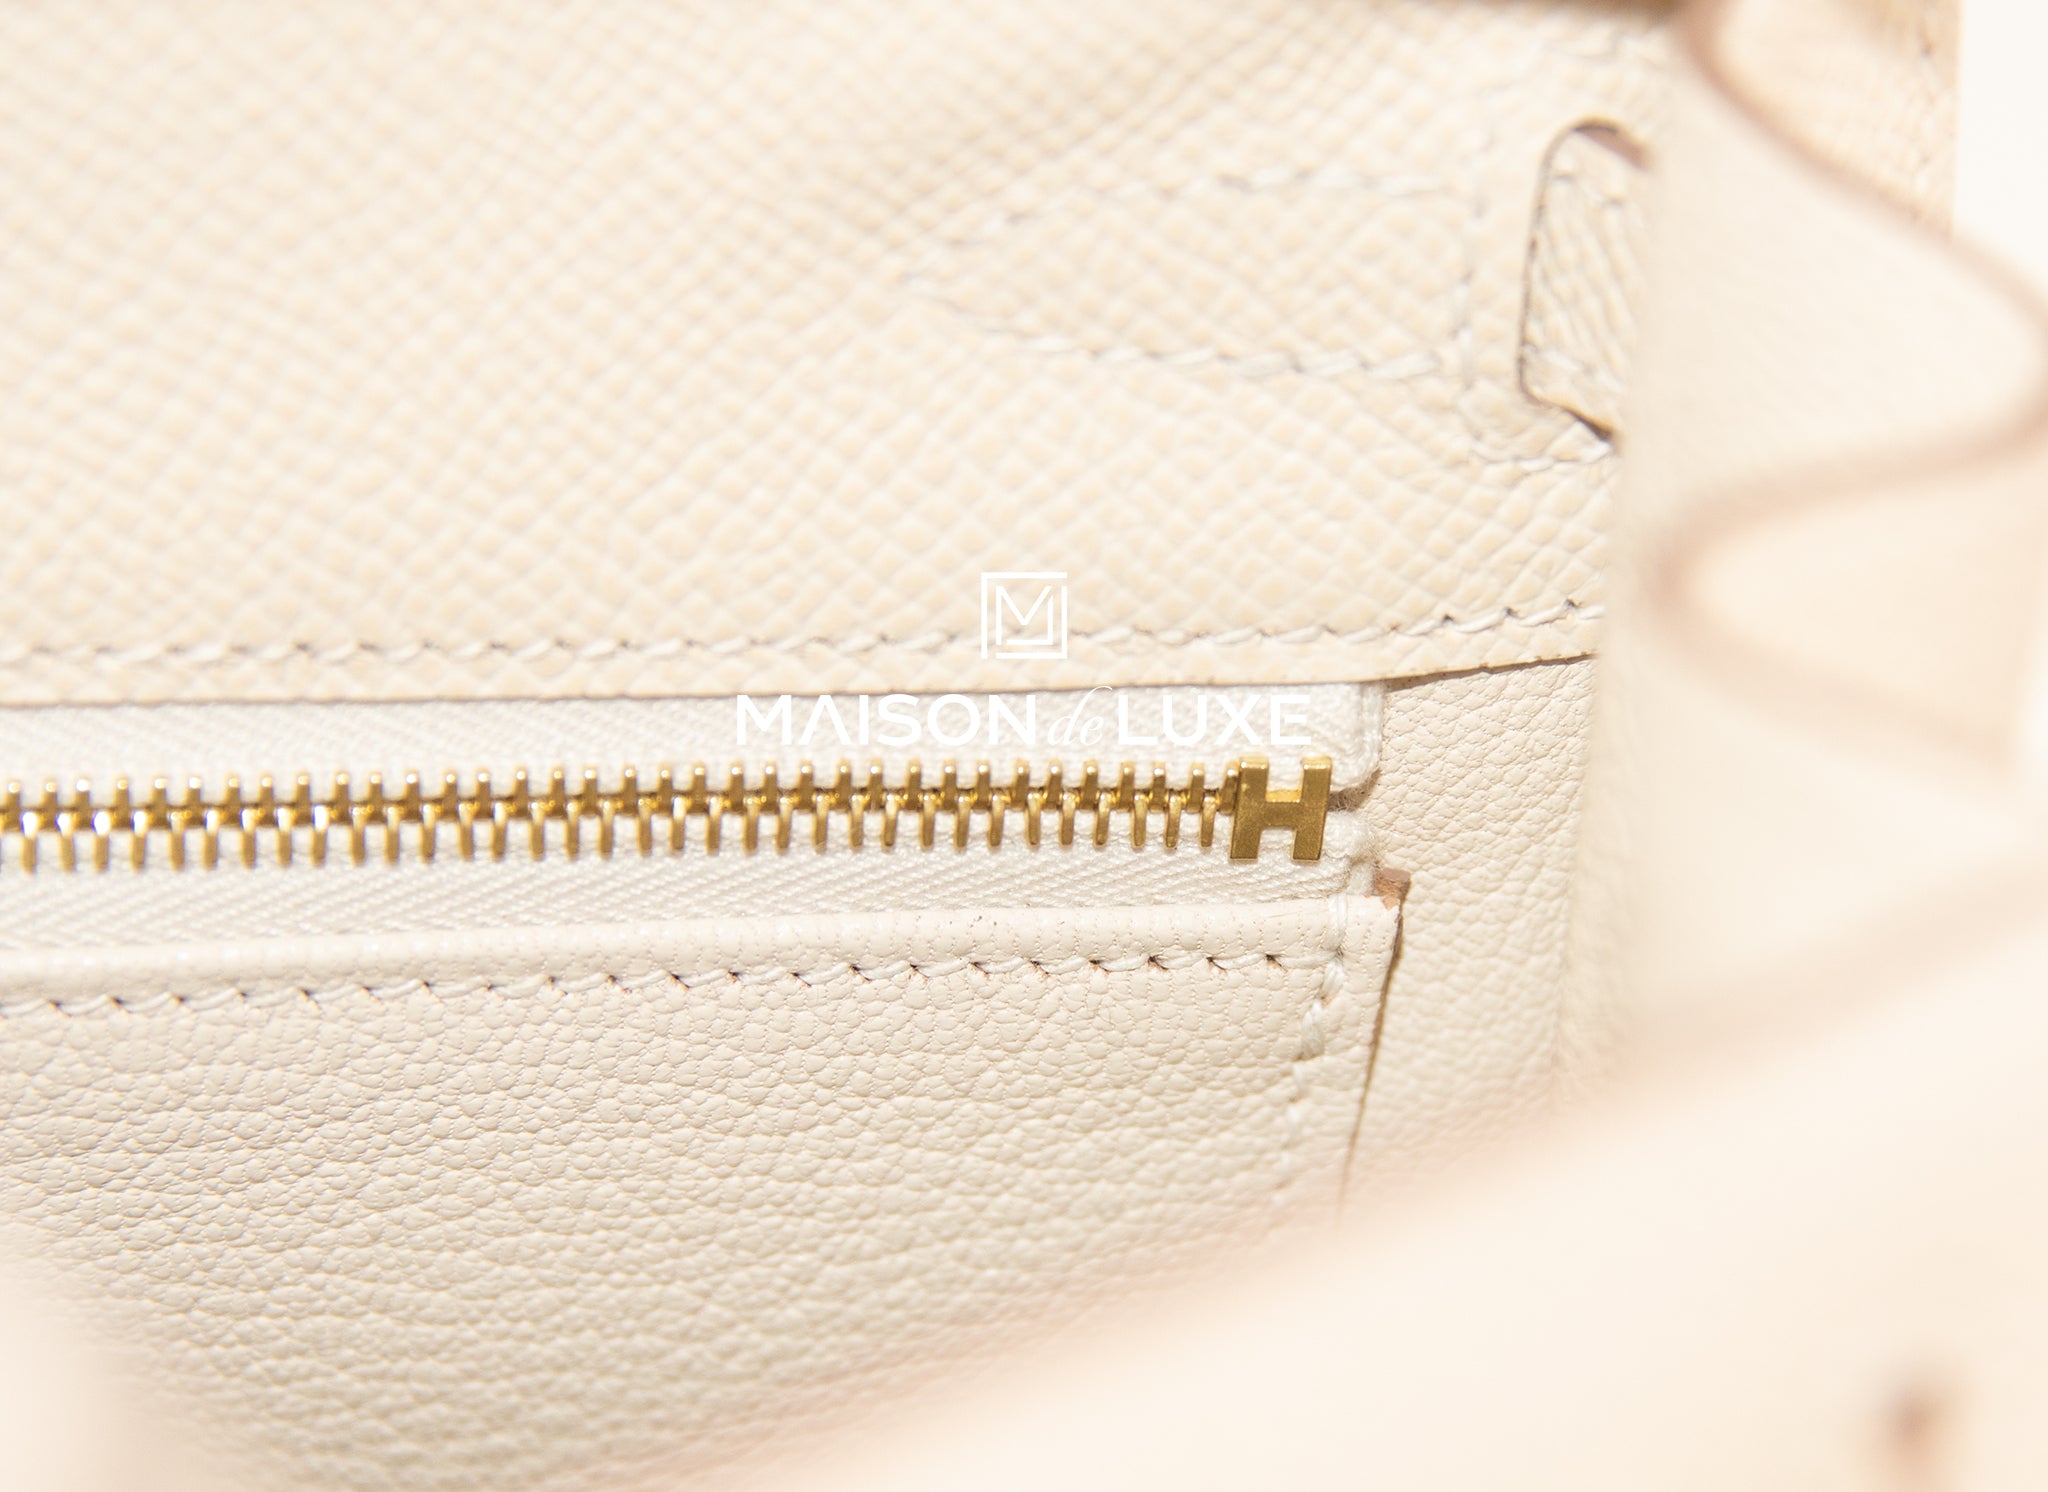 Hermès Birkin Craie Sellier Handbag